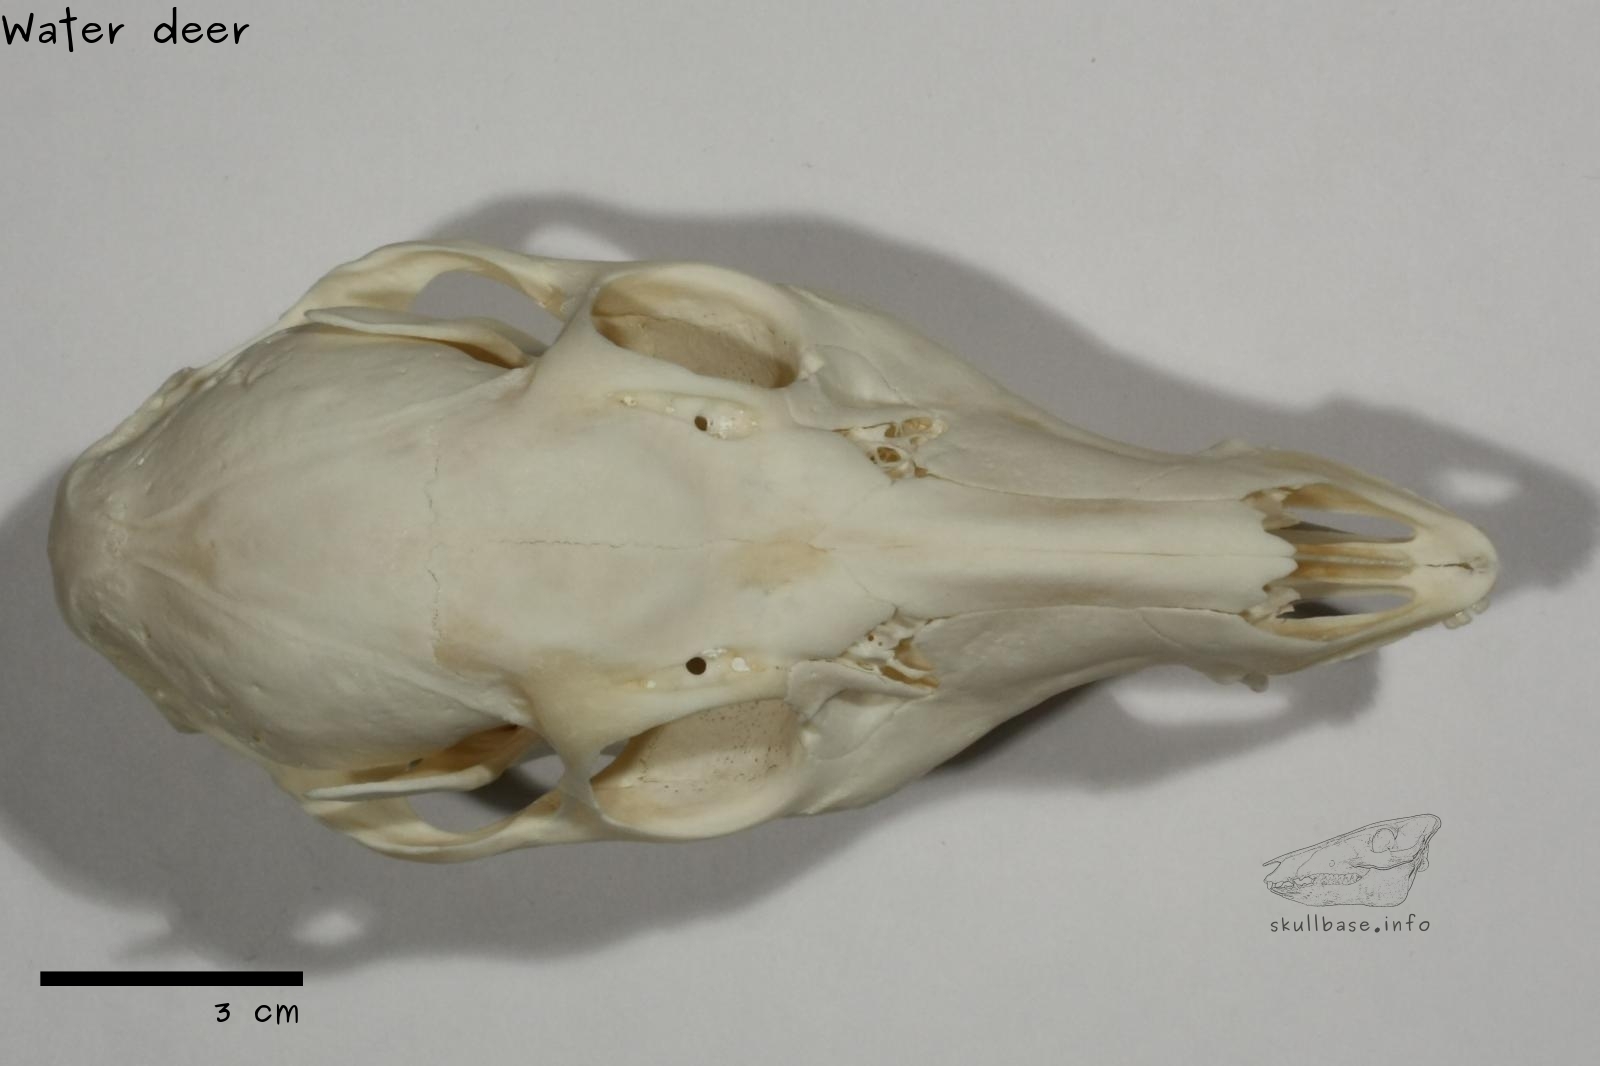 Water deer (Hydropotes inermis) skull dorsal view